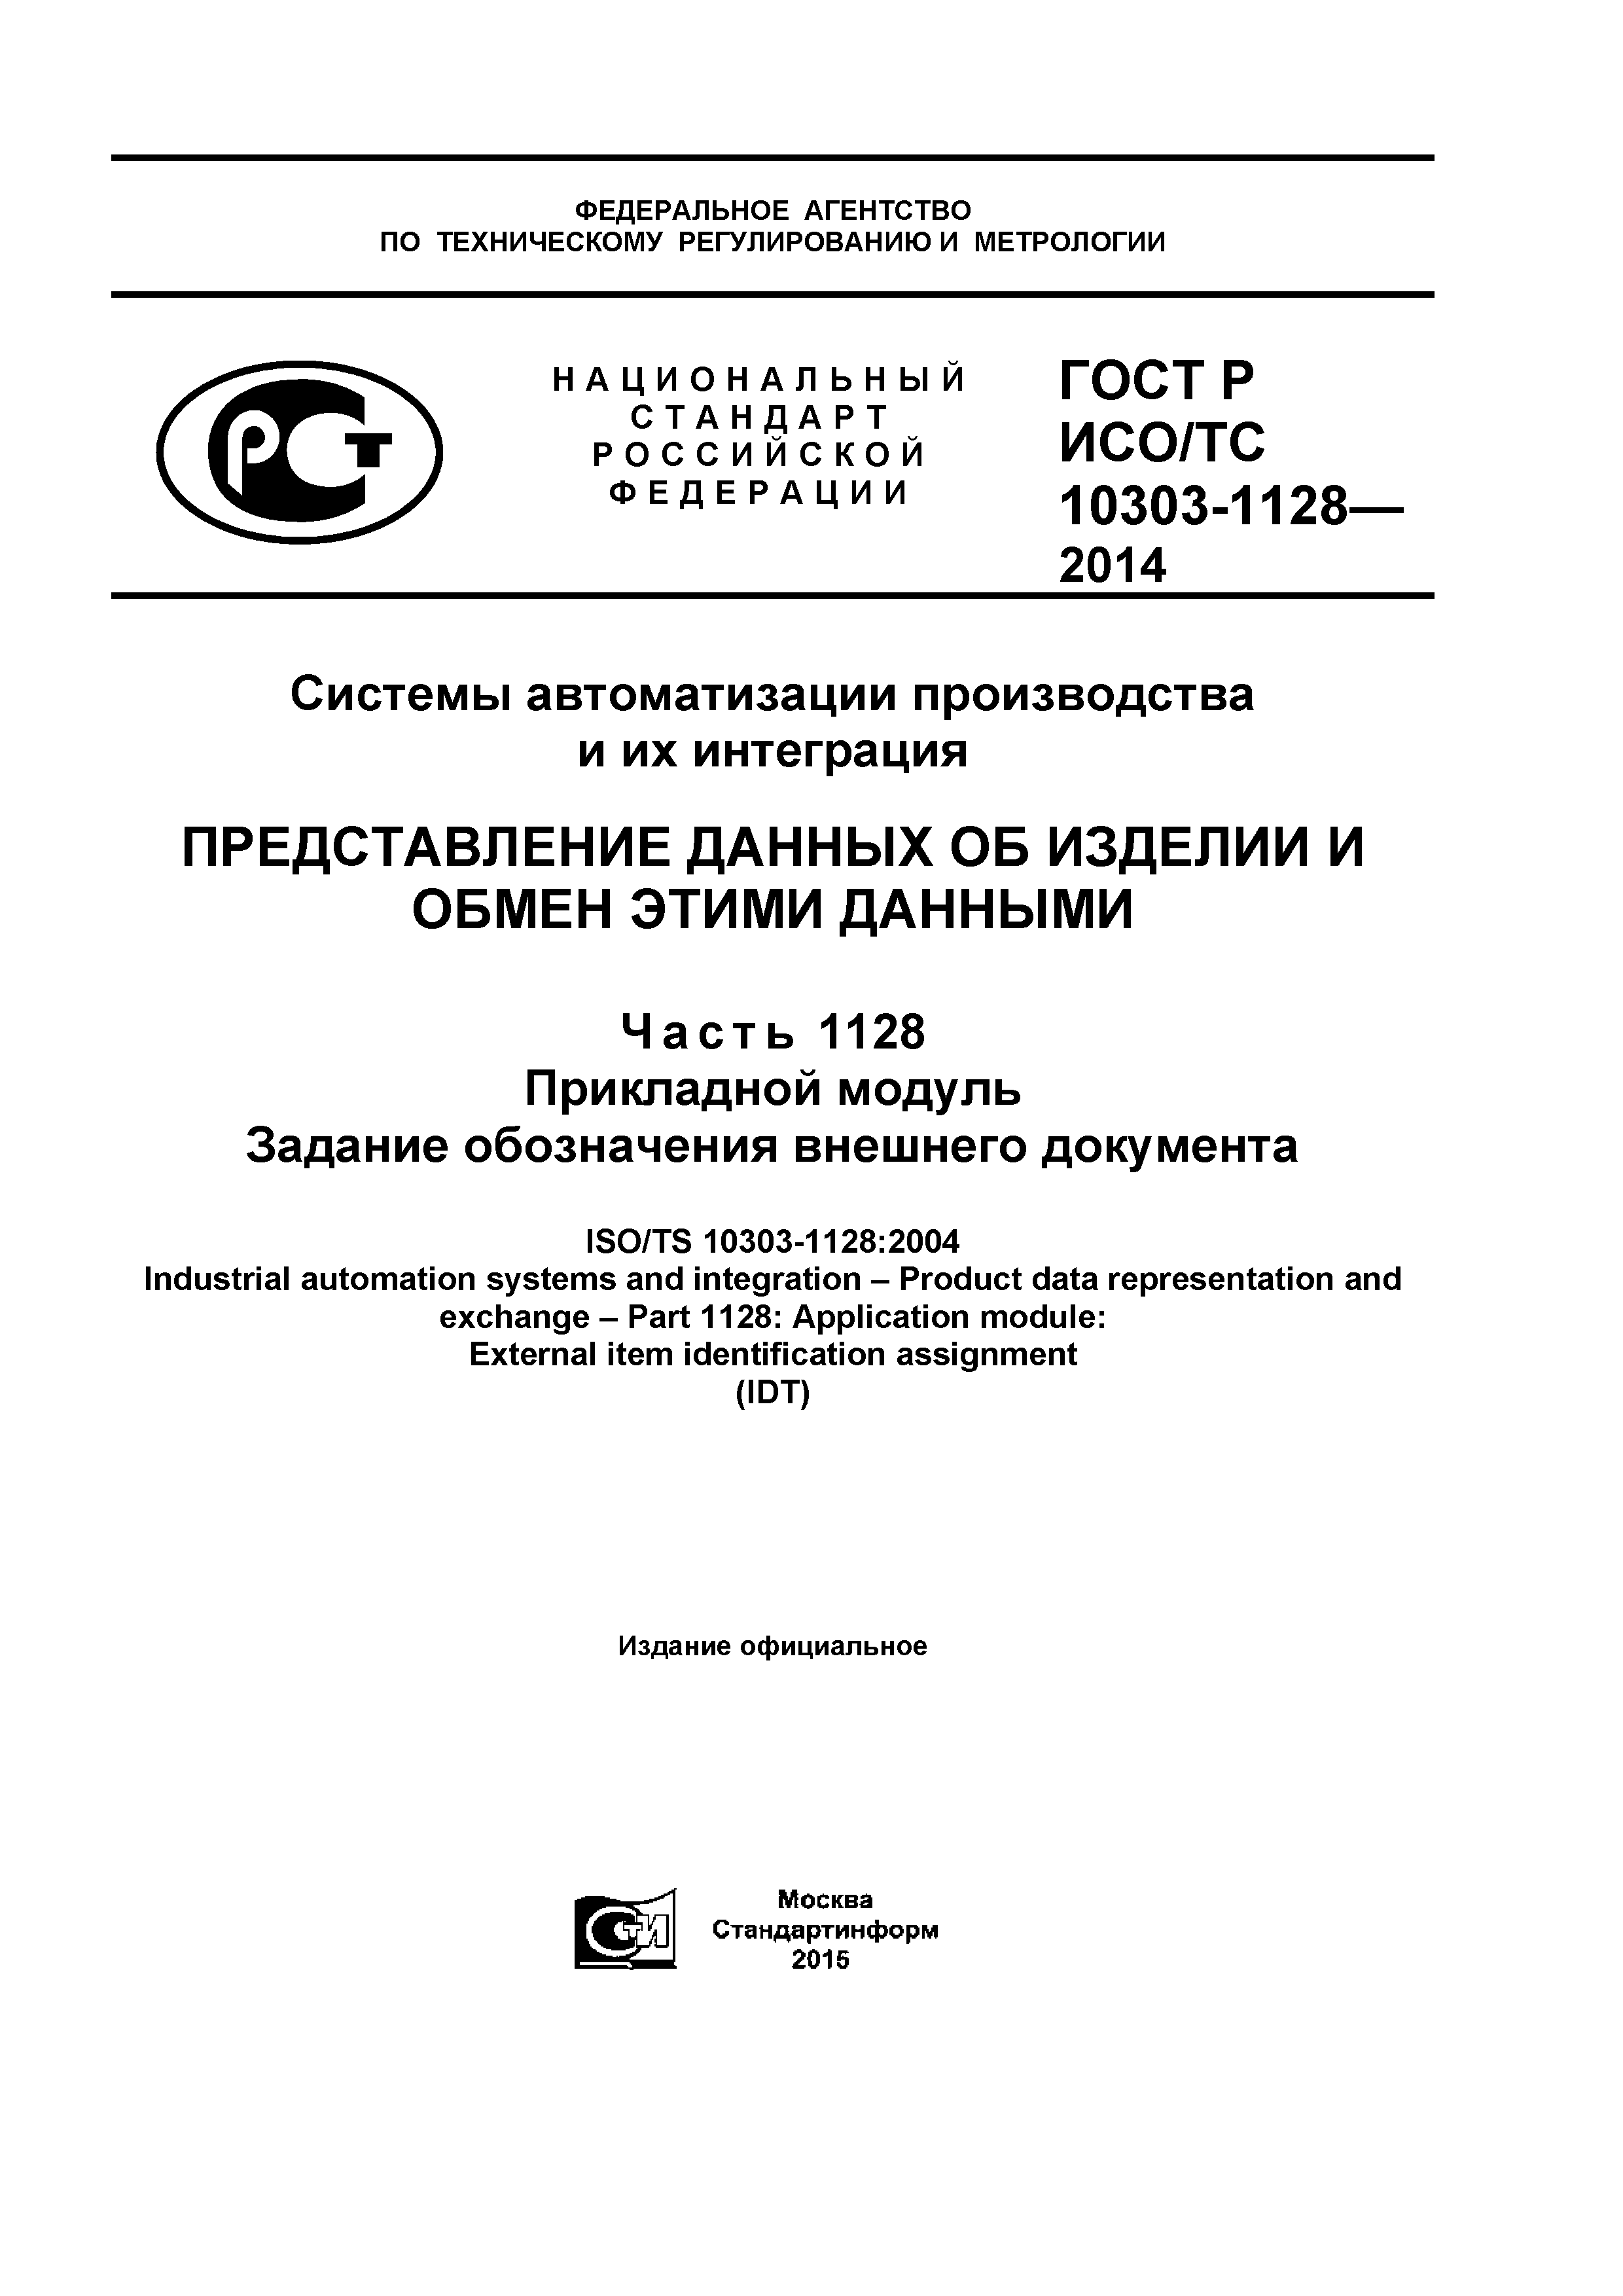 ГОСТ Р ИСО/ТС 10303-1128-2014